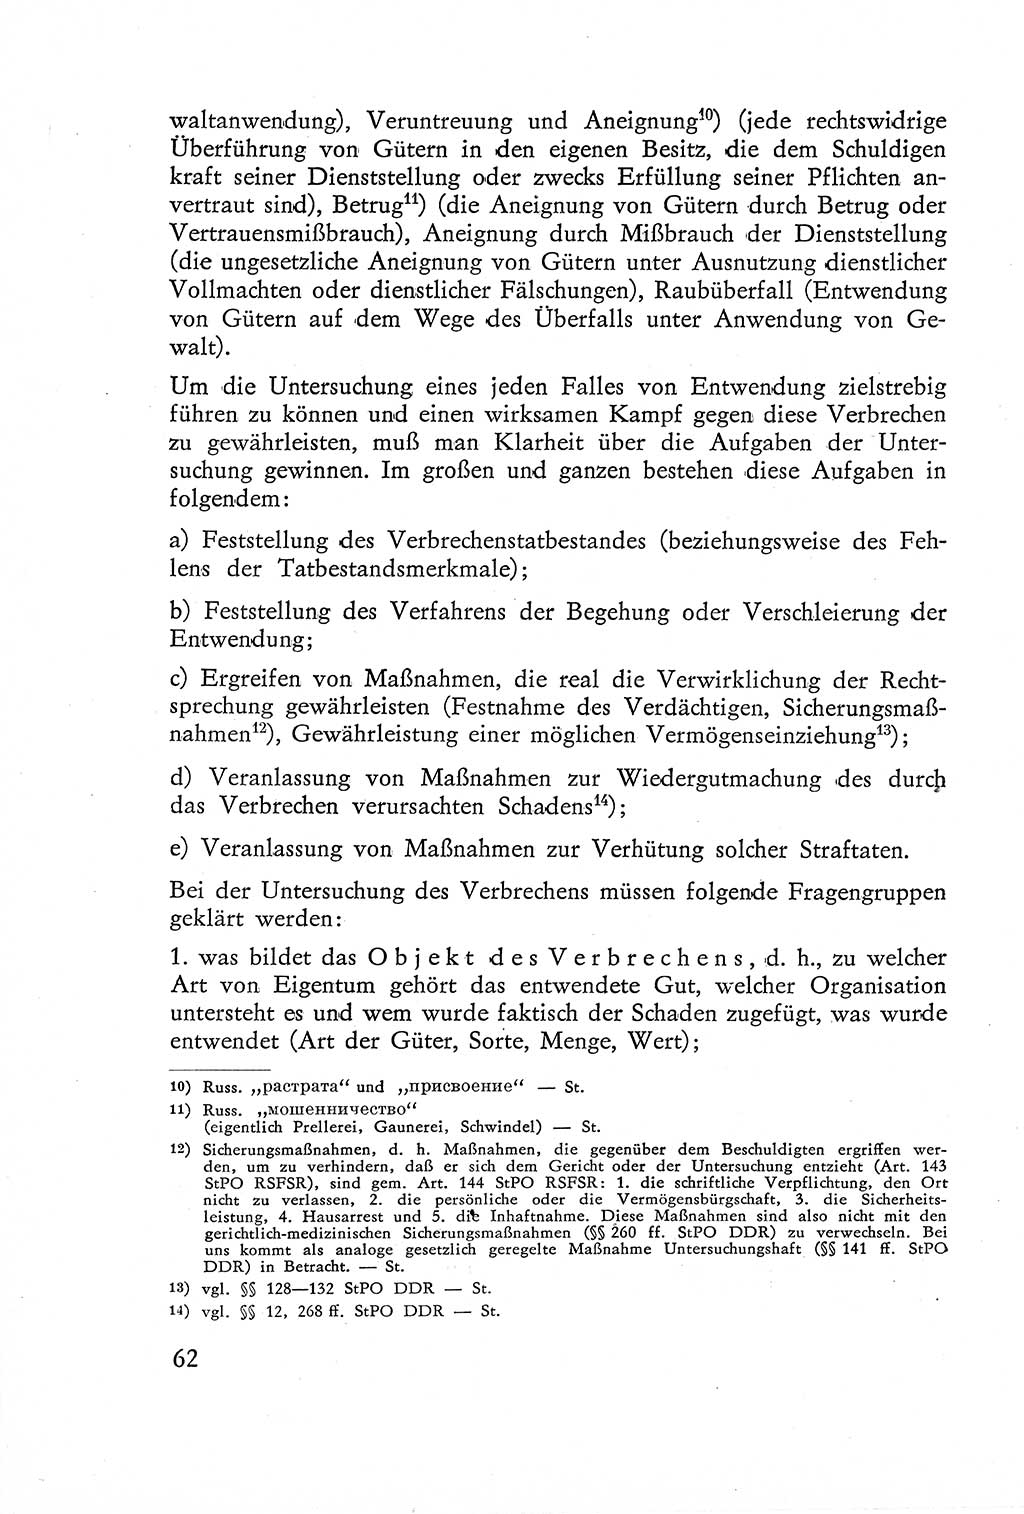 Die Untersuchung einzelner Verbrechensarten [Deutsche Demokratische Republik (DDR)] 1960, Seite 62 (Unters. Verbr.-Art. DDR 1960, S. 62)